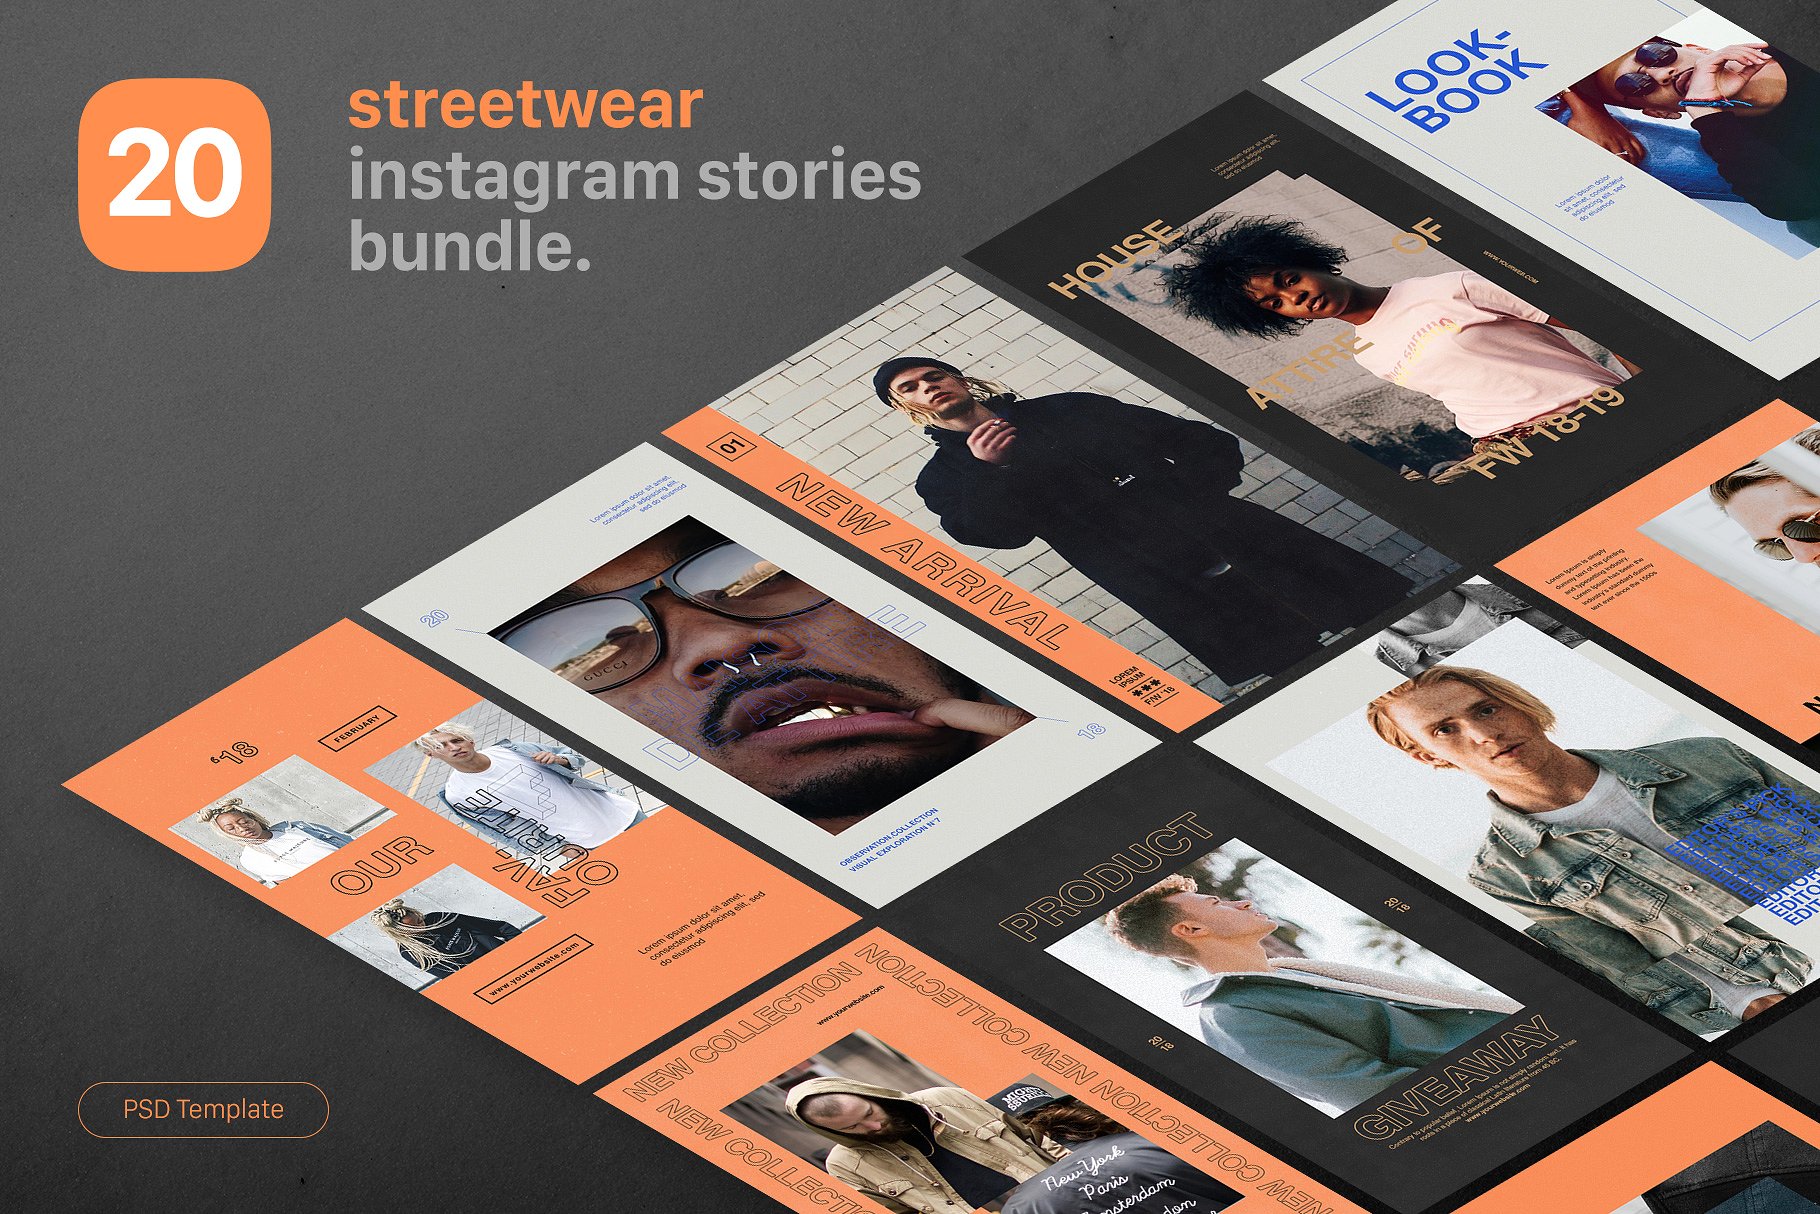 街头服饰Ins故事贴图模板第一素材精选合集 Instagram Stories – Streetwear插图